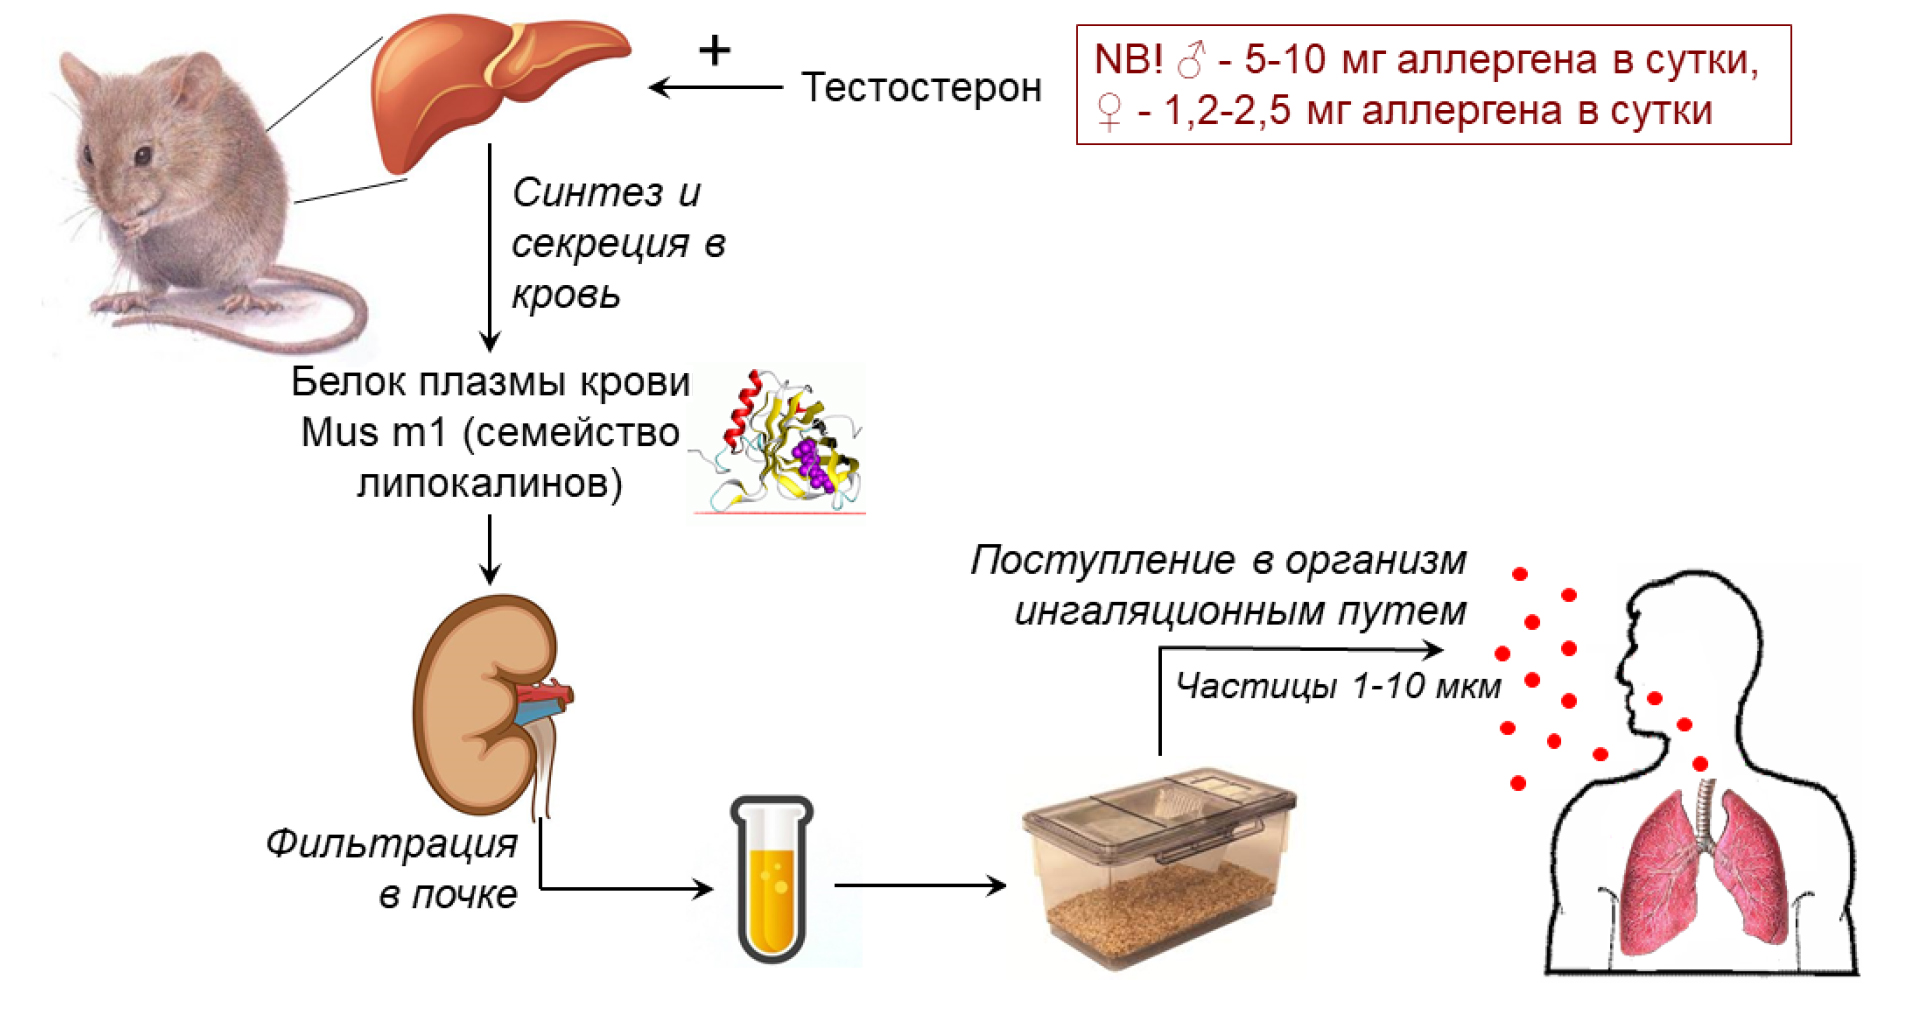  <strong>Рис. 1.</strong> Схема образования и попадания в организм человека аллергенов лабораторных грызунов семейства липокалинов